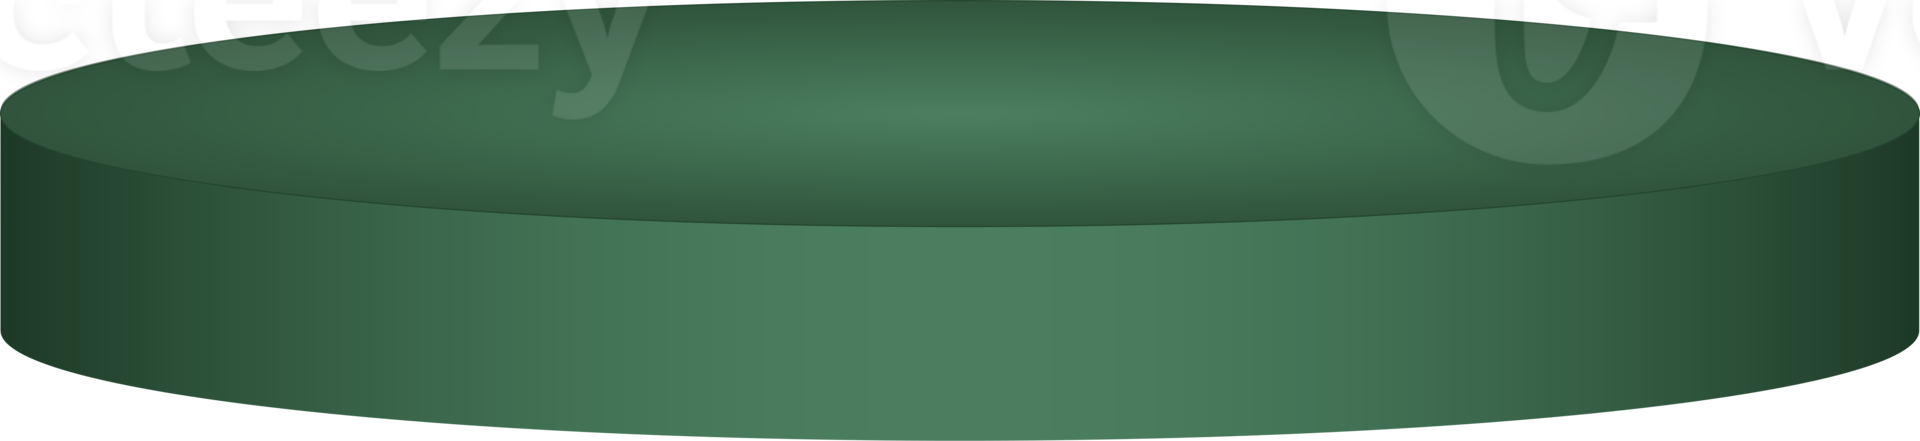 pódio verde escuro para apresentação do produto png